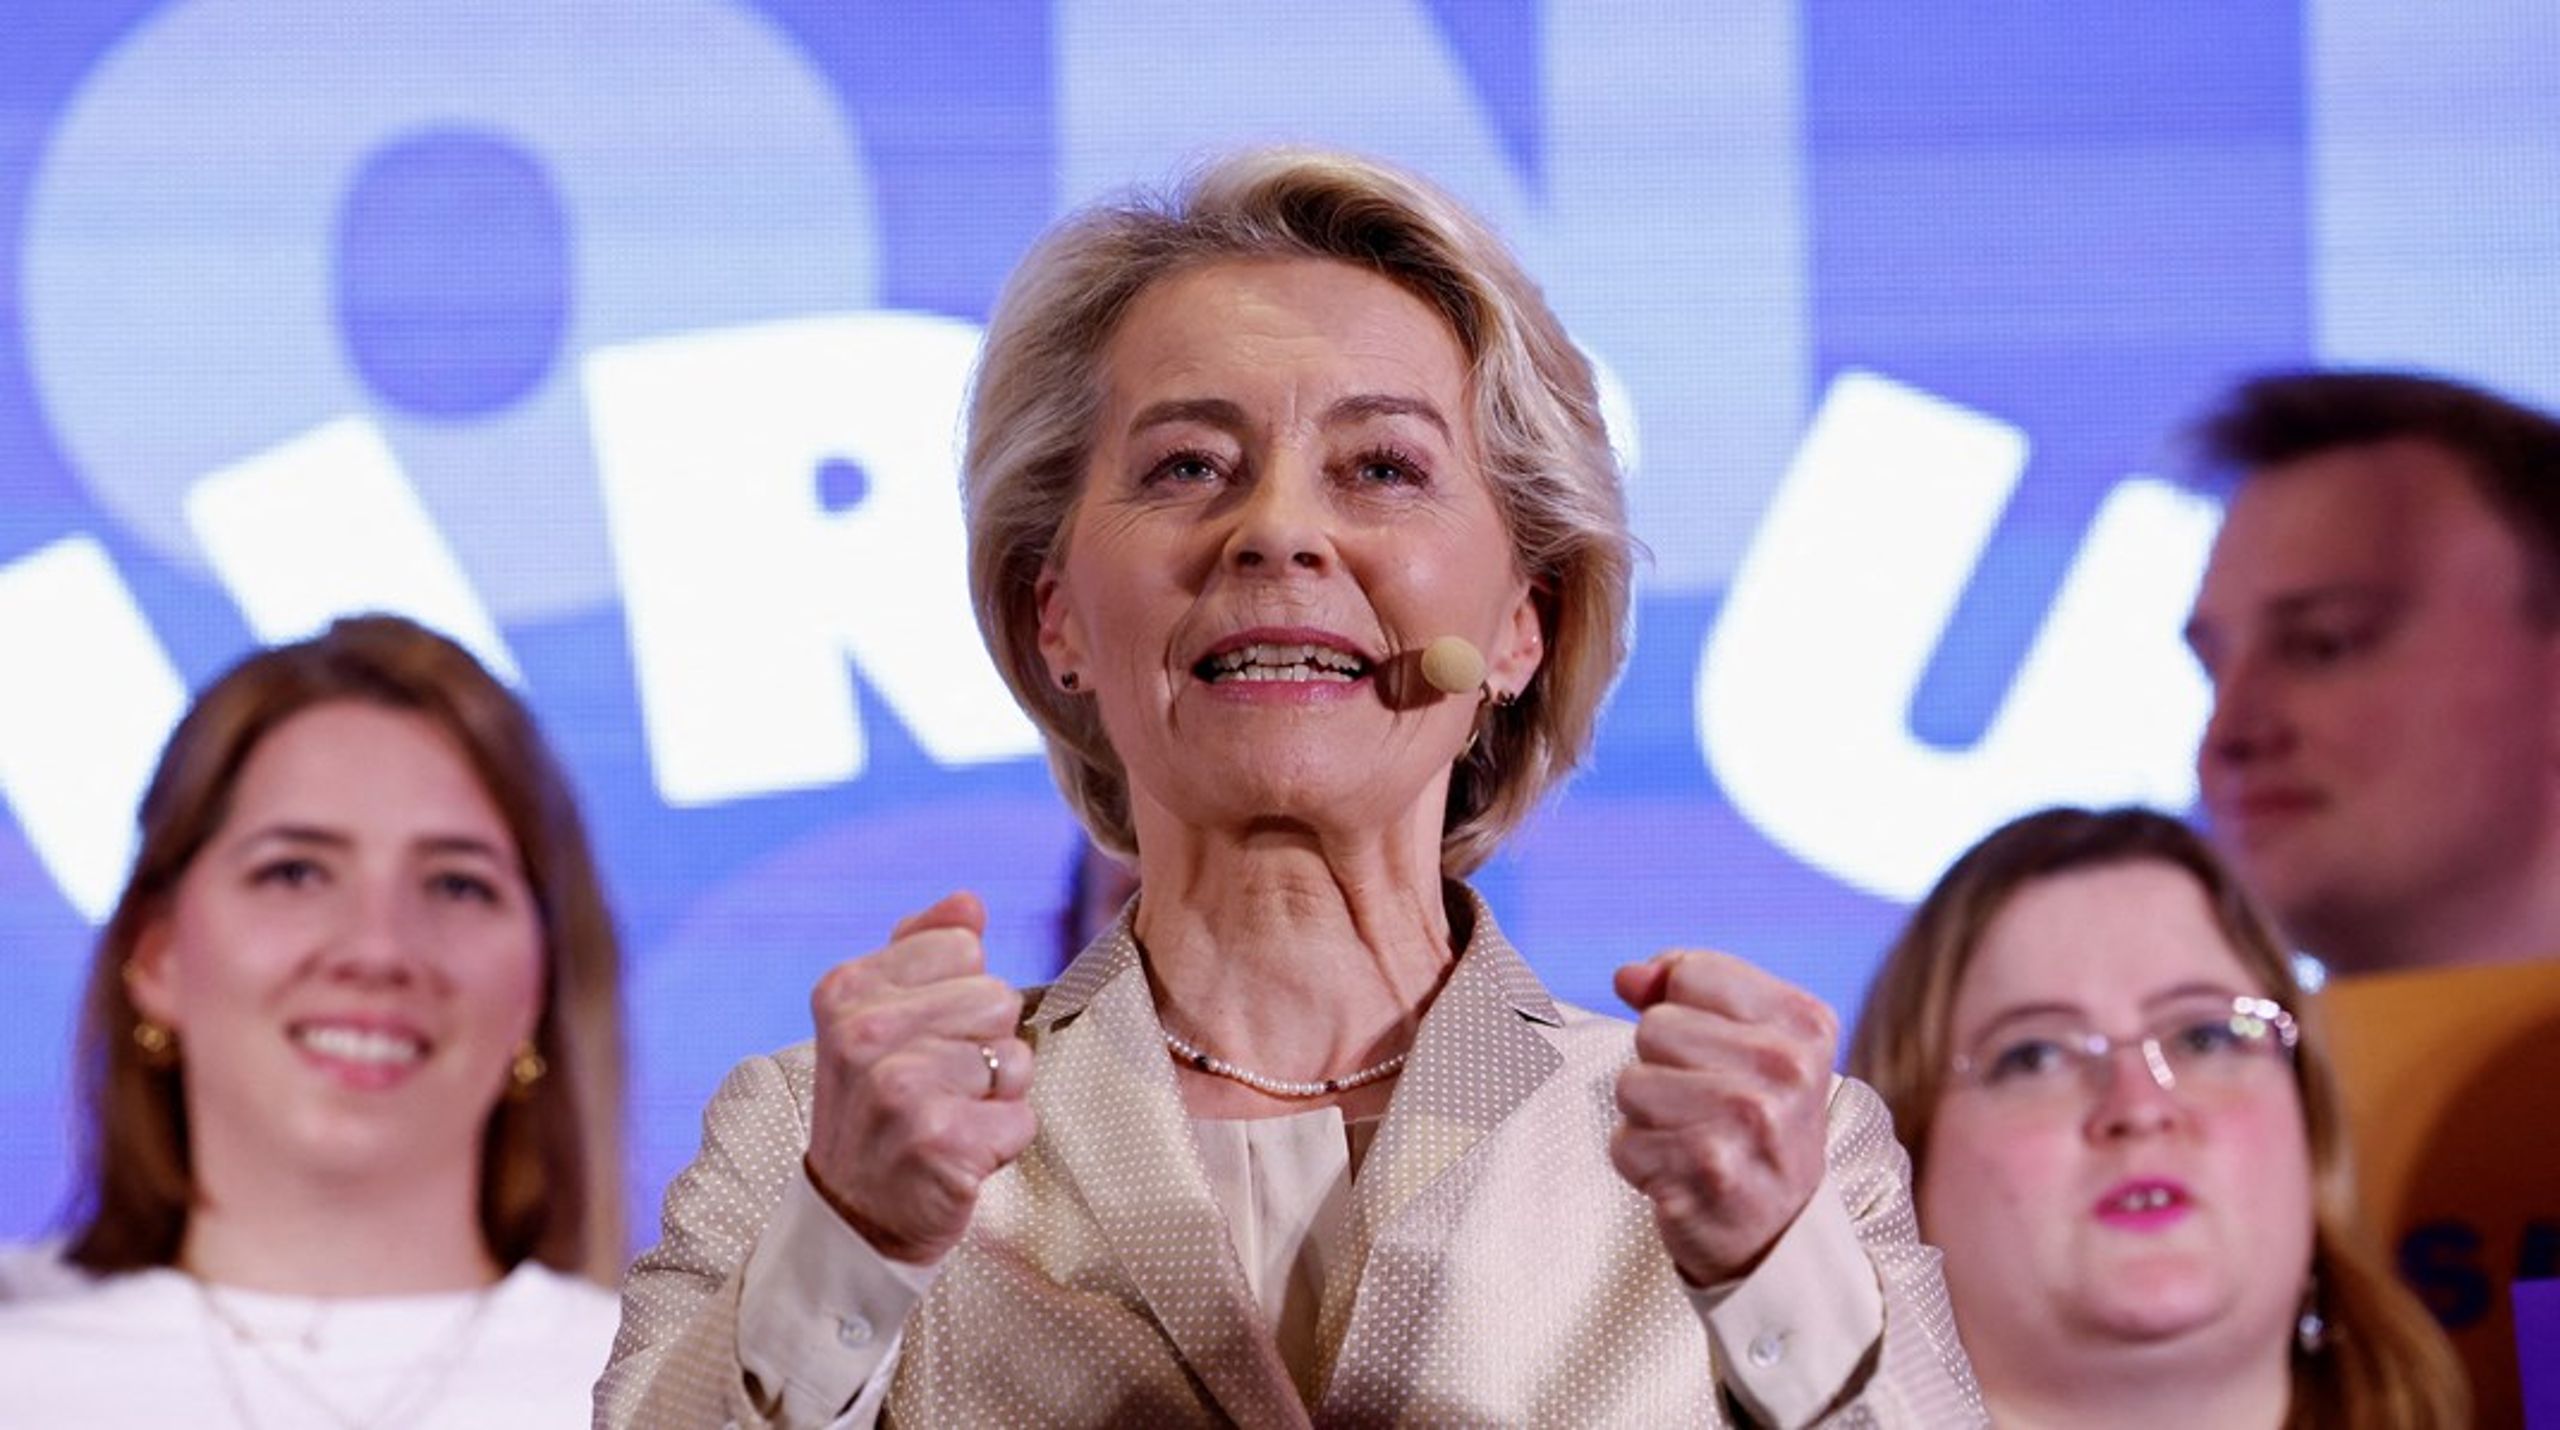 KUNNE PUSTE LETTET UT: Ursula von der Leyen kunne puste lettet ut etter at valgresultatene var klare.